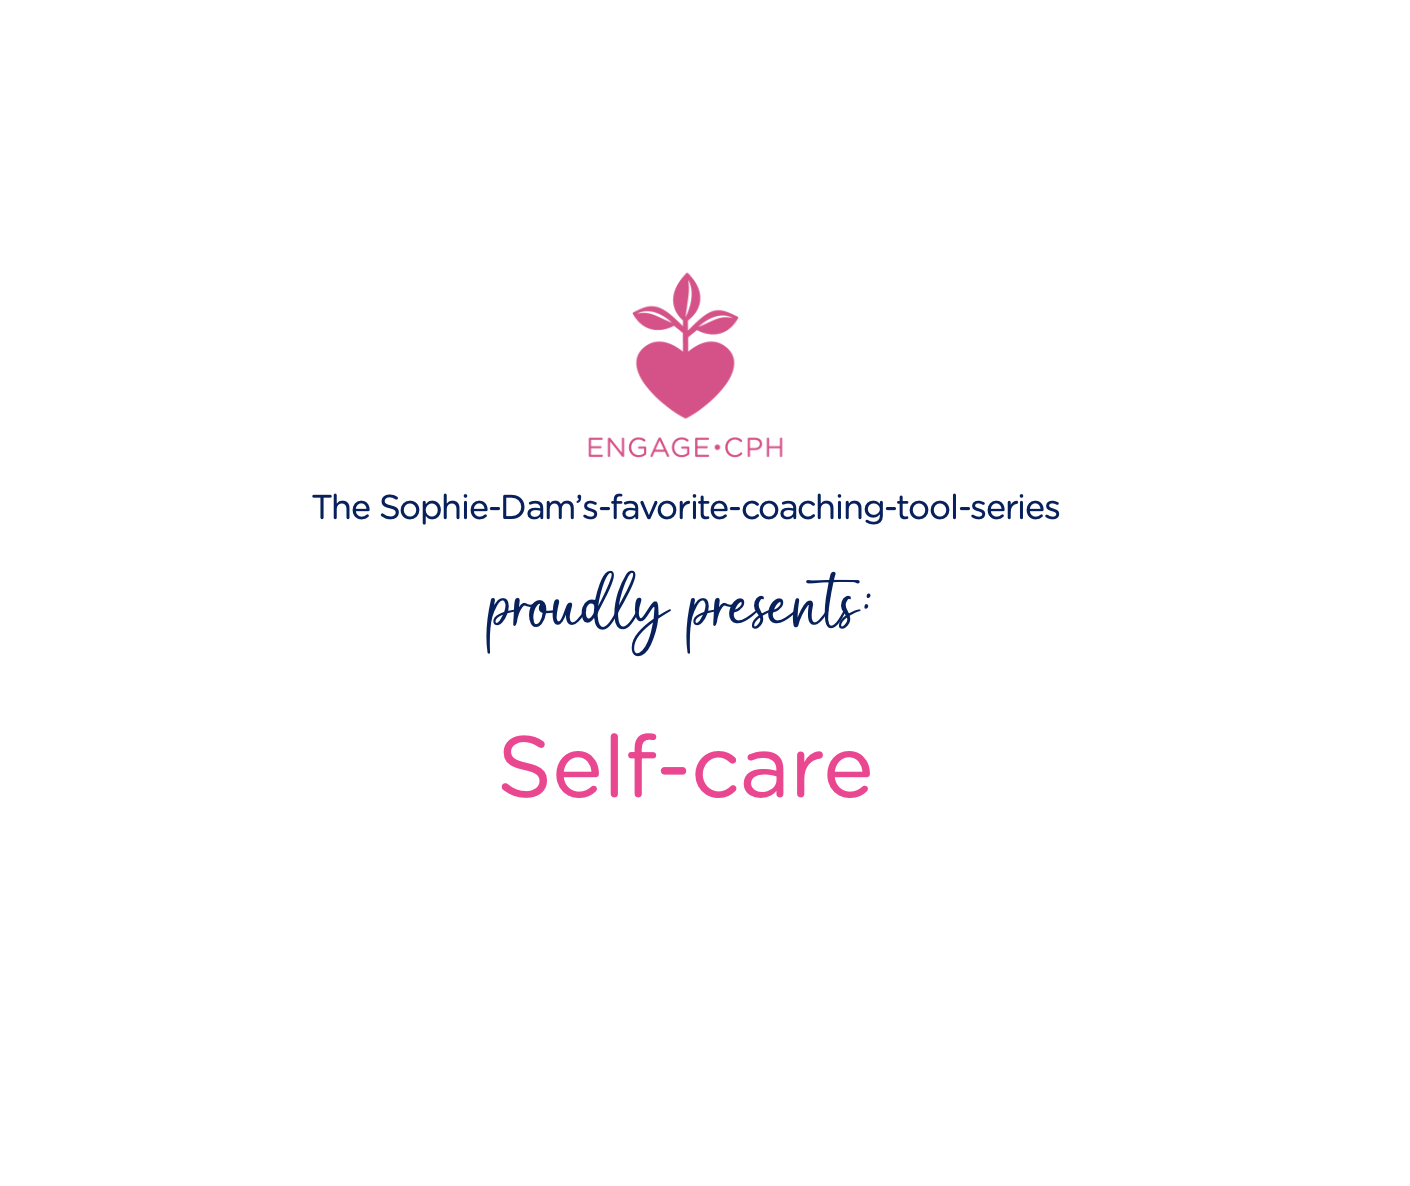 Businesscoach og Karrierecoach for både private og virksomheder. Zen and the Art of Self-Regulation: Self-care